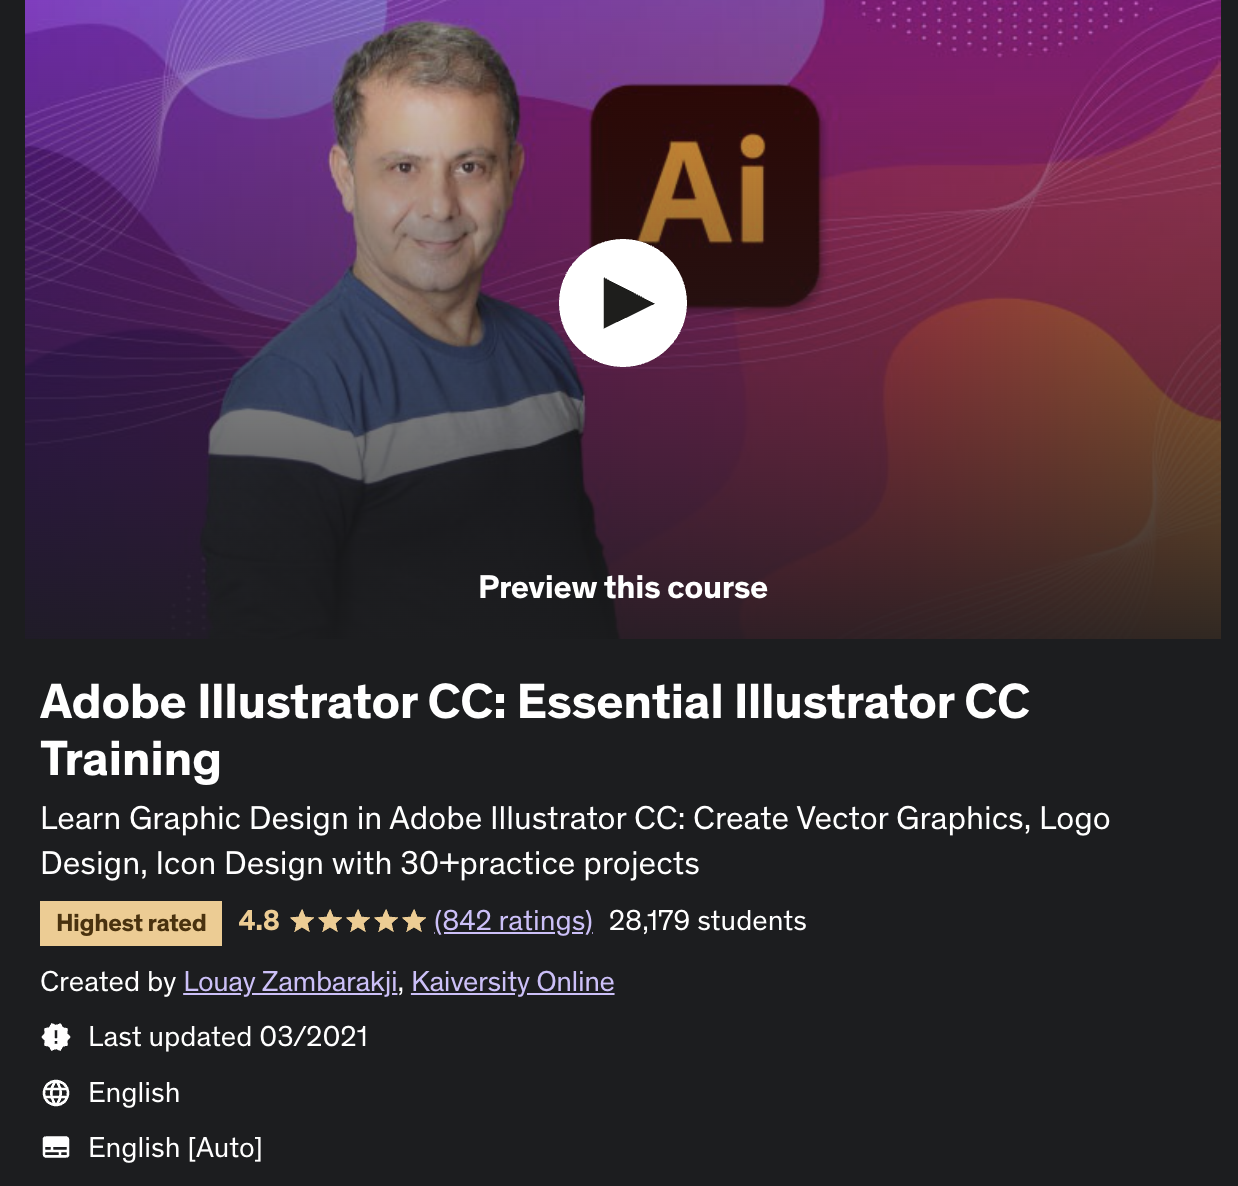 download adobe illustrator cc essential training course